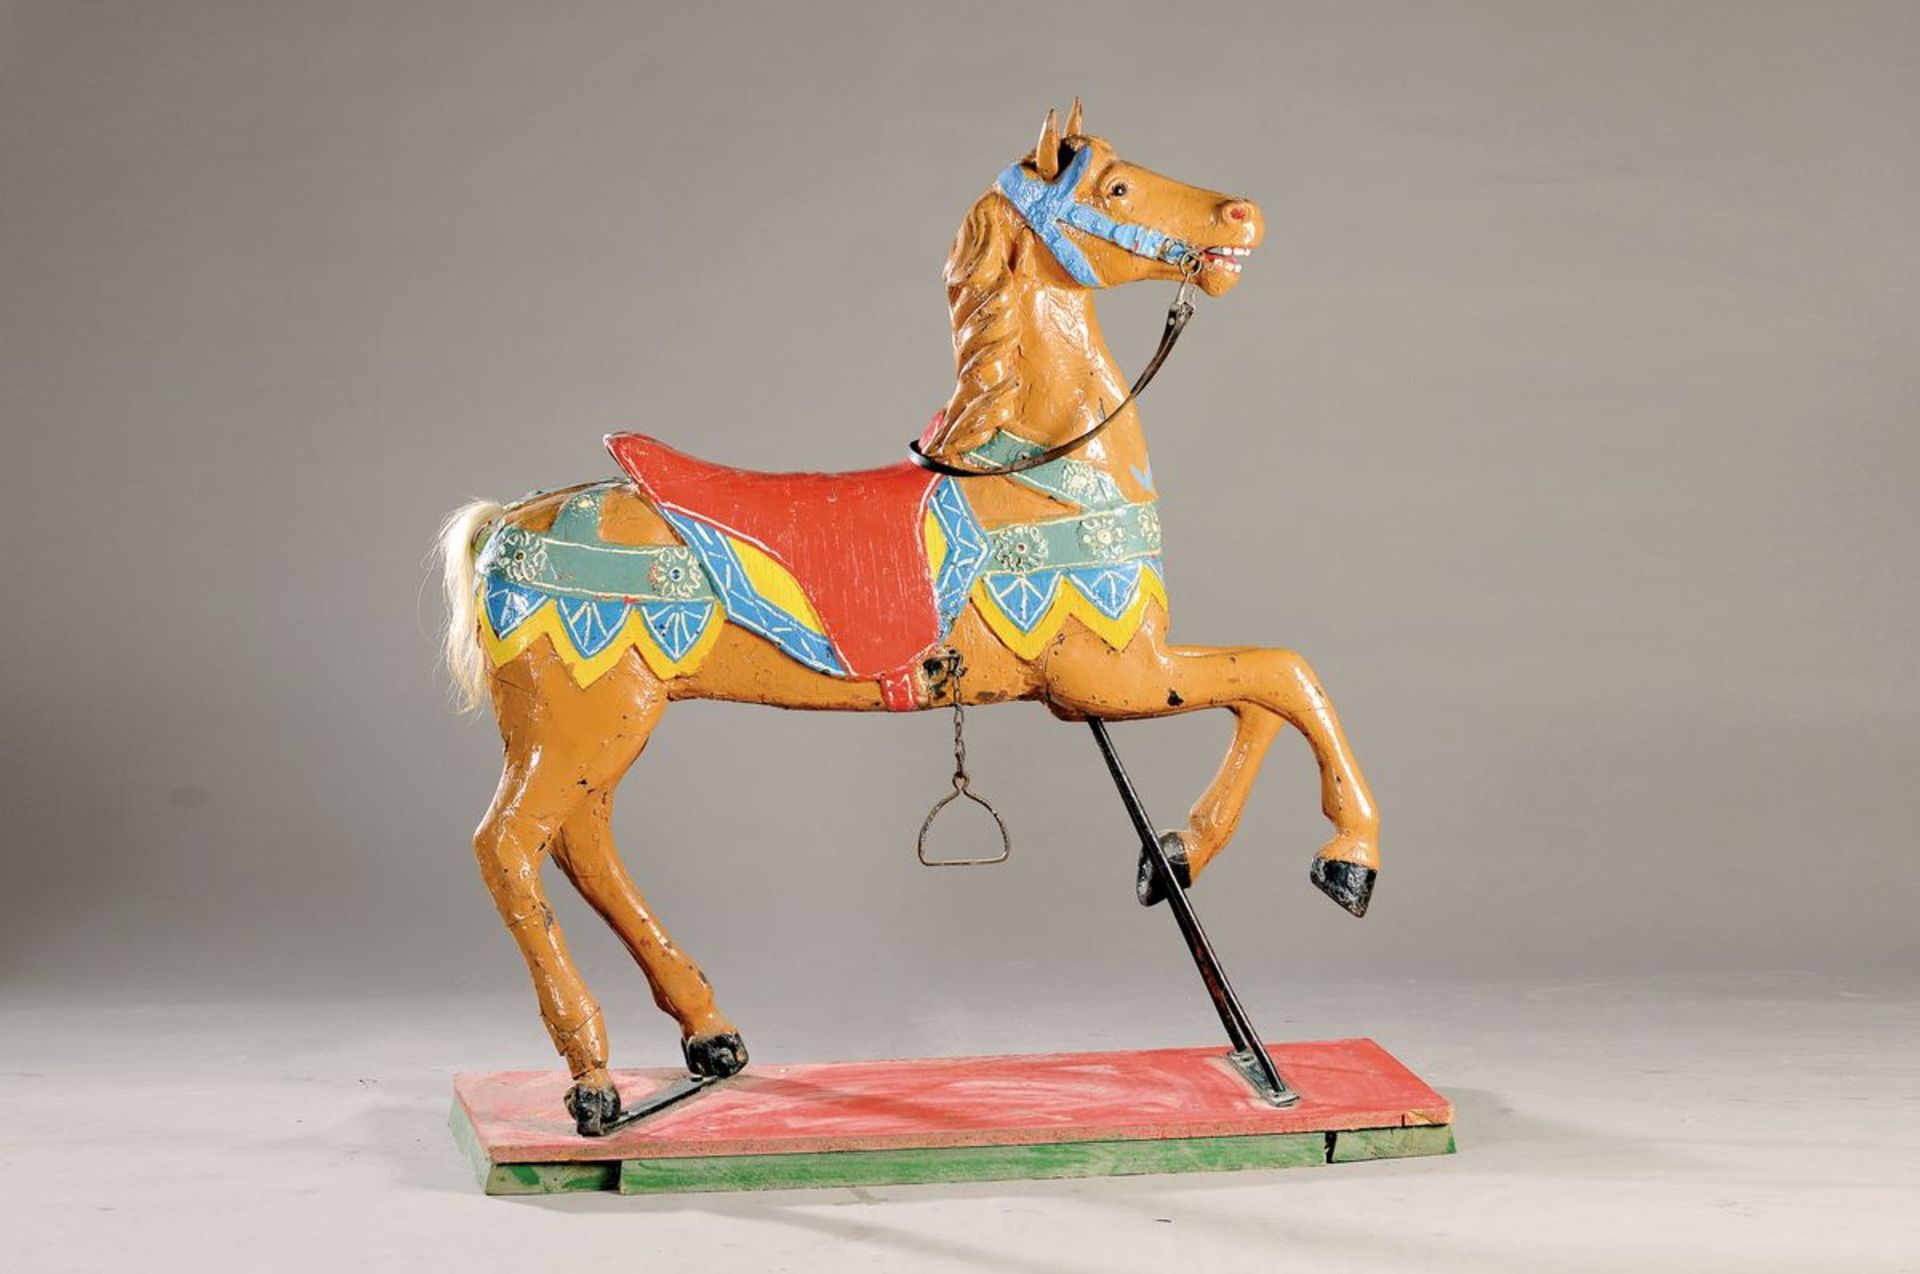 Antikes Karussell-Pferd, um 1880/1900, eines